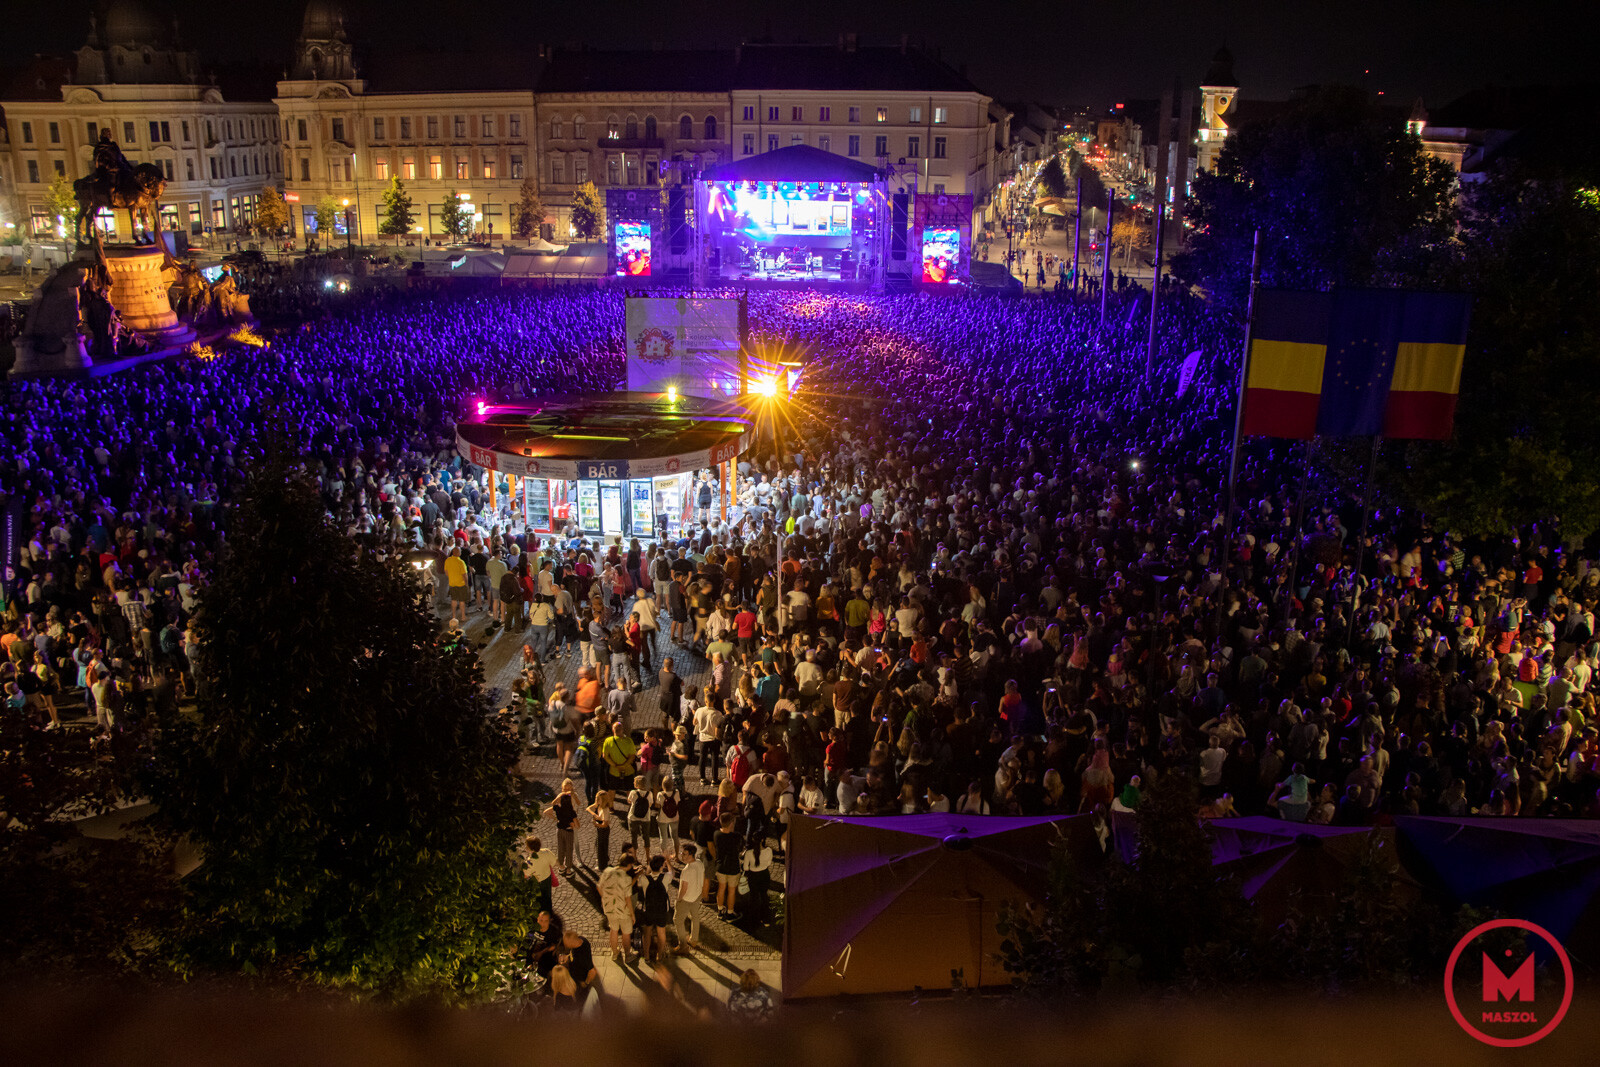 Többezres tömeg Kolozsvár egyik legnagyobb közösségi rendezvényén, a Magyar Napokon | Fotó: Borsi Balázs